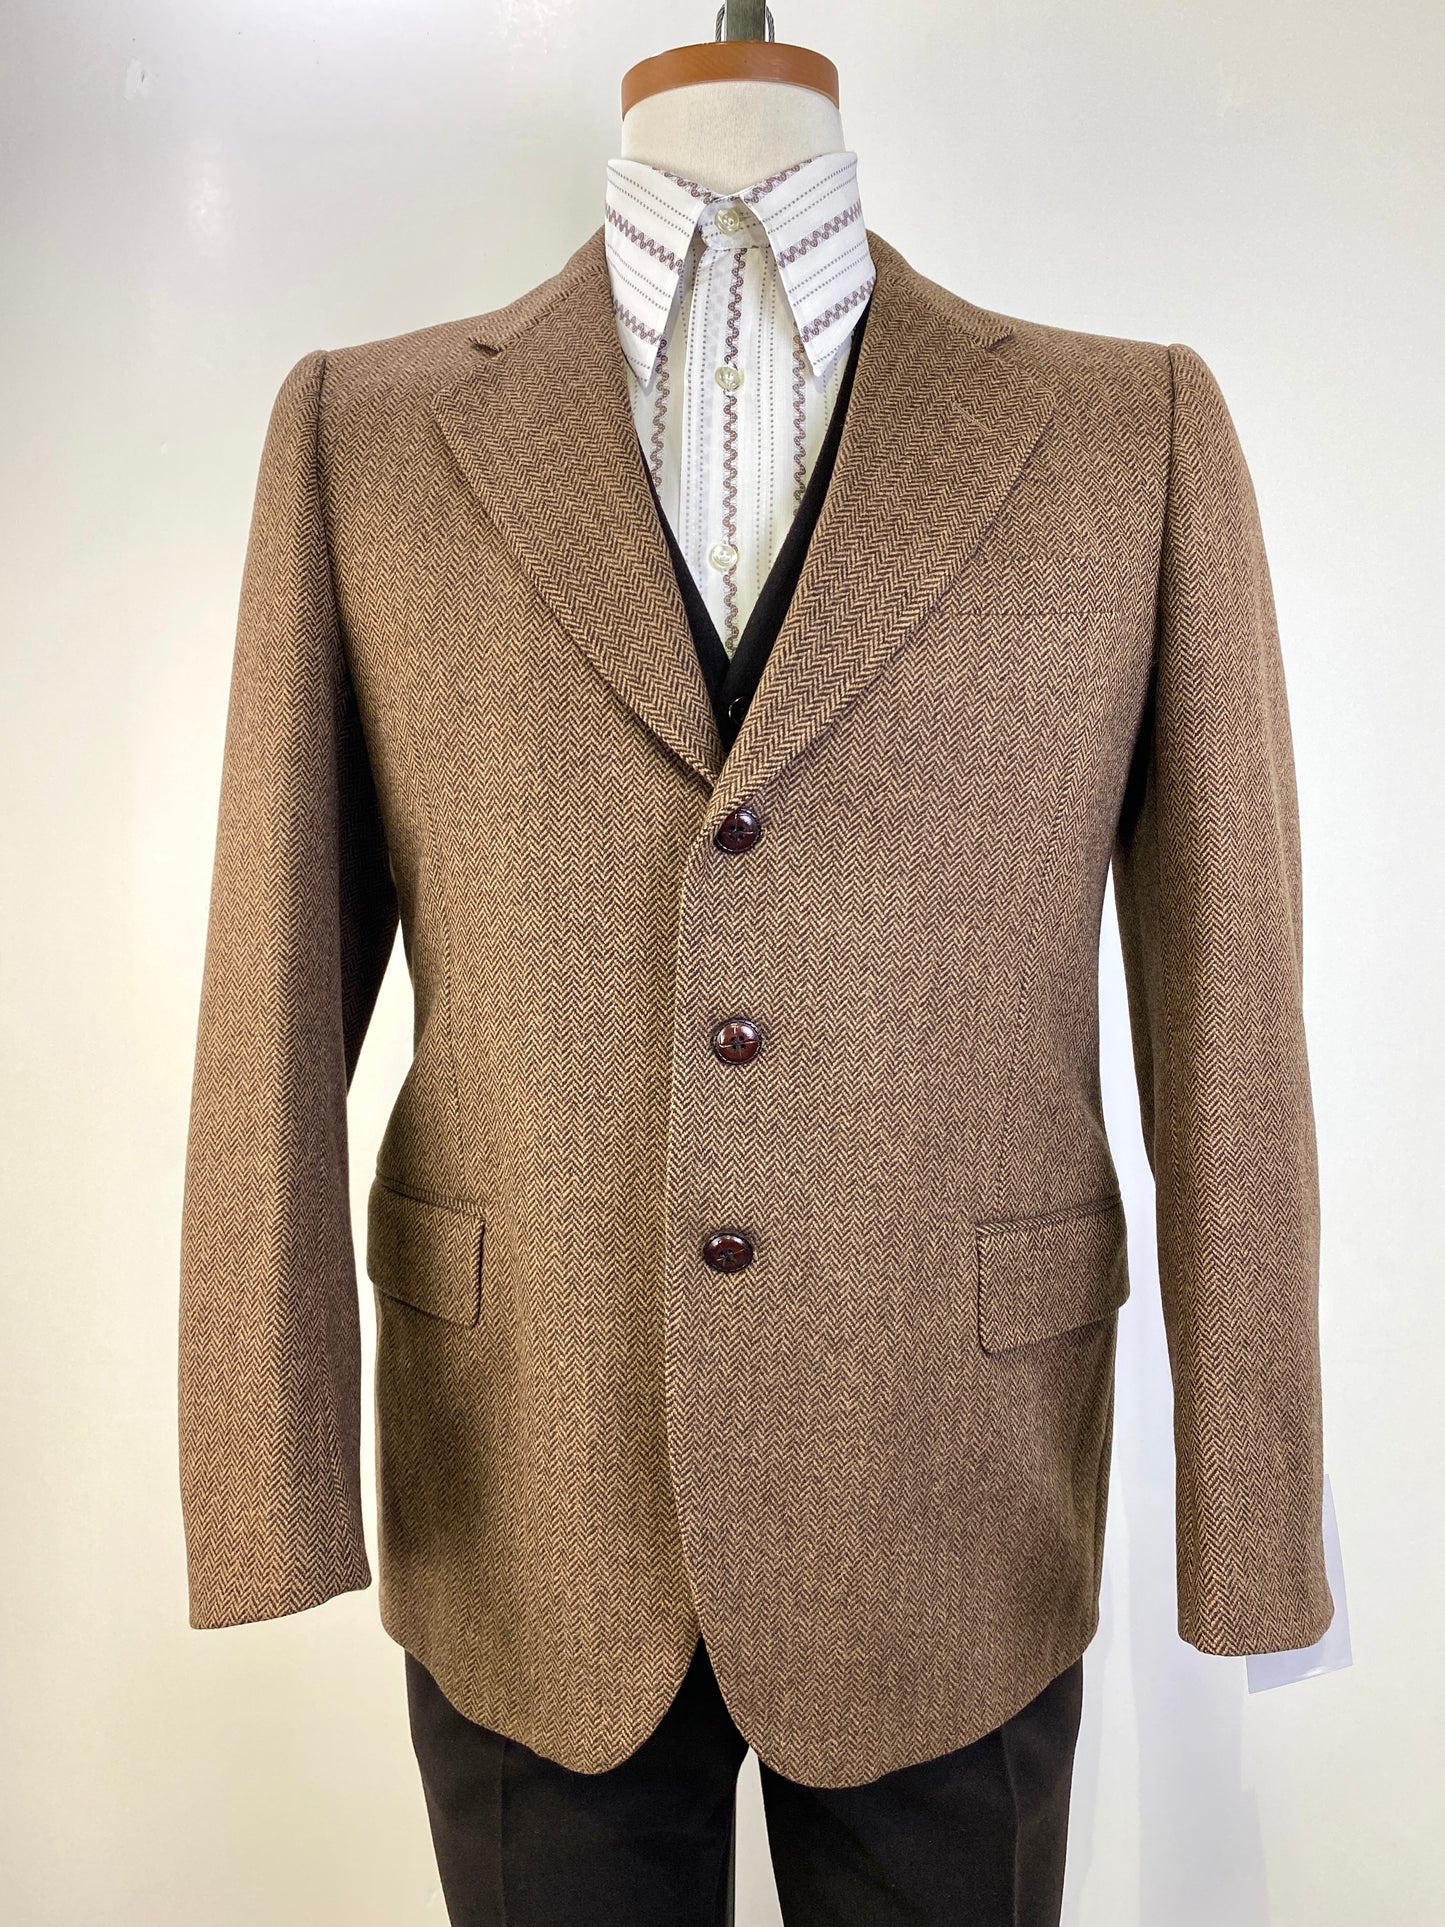 1980s Vintage Men's Suit, Brown Herringbone Jacket 3-Piece Italian Suit, C38